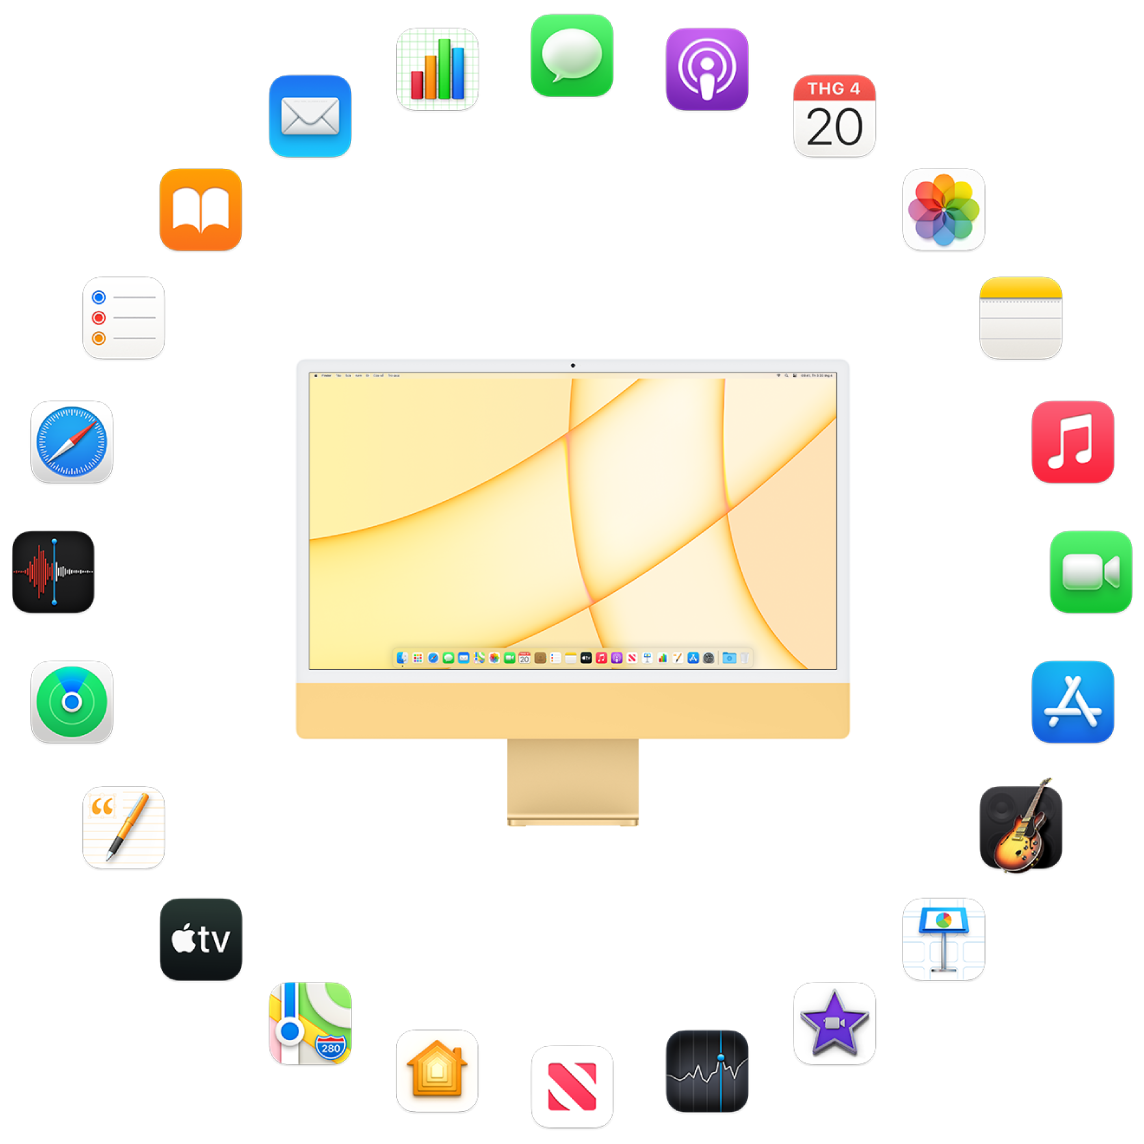 iMac được bao quanh bởi biểu tượng cho các ứng dụng tích hợp được mô tả trong các phần sau.